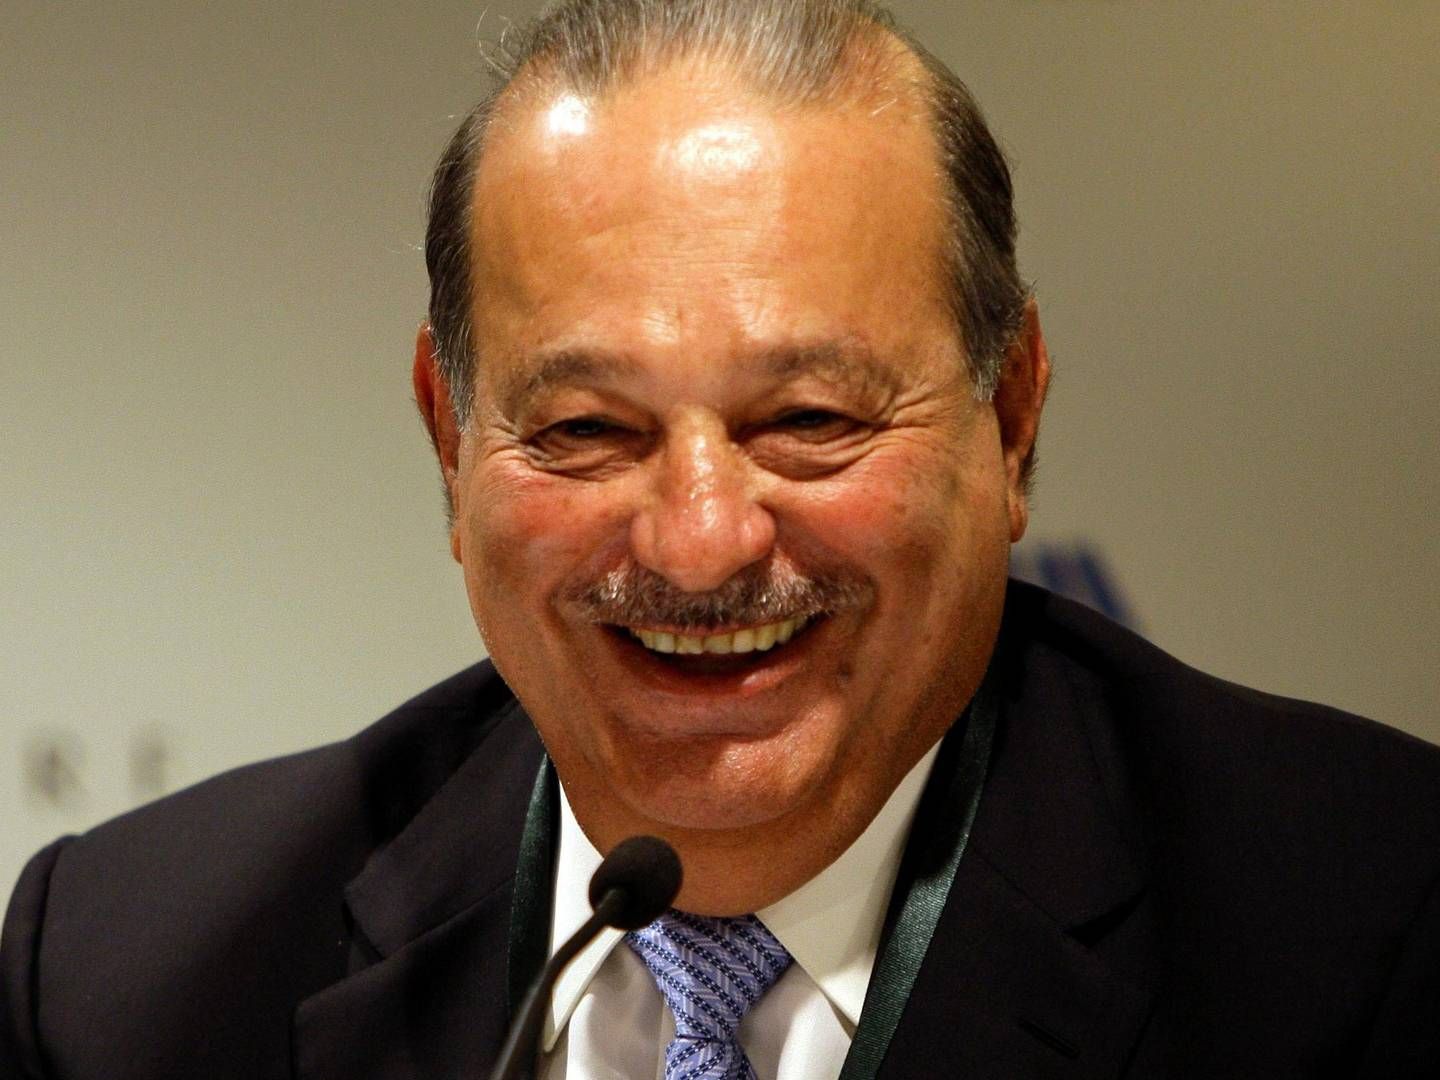 Carlos Slim har tjent store dele af sin formue gennem den latinamerikanske teleindustri. | Foto: JEREMY PIPER/AP/POLFOTO/ARKIV